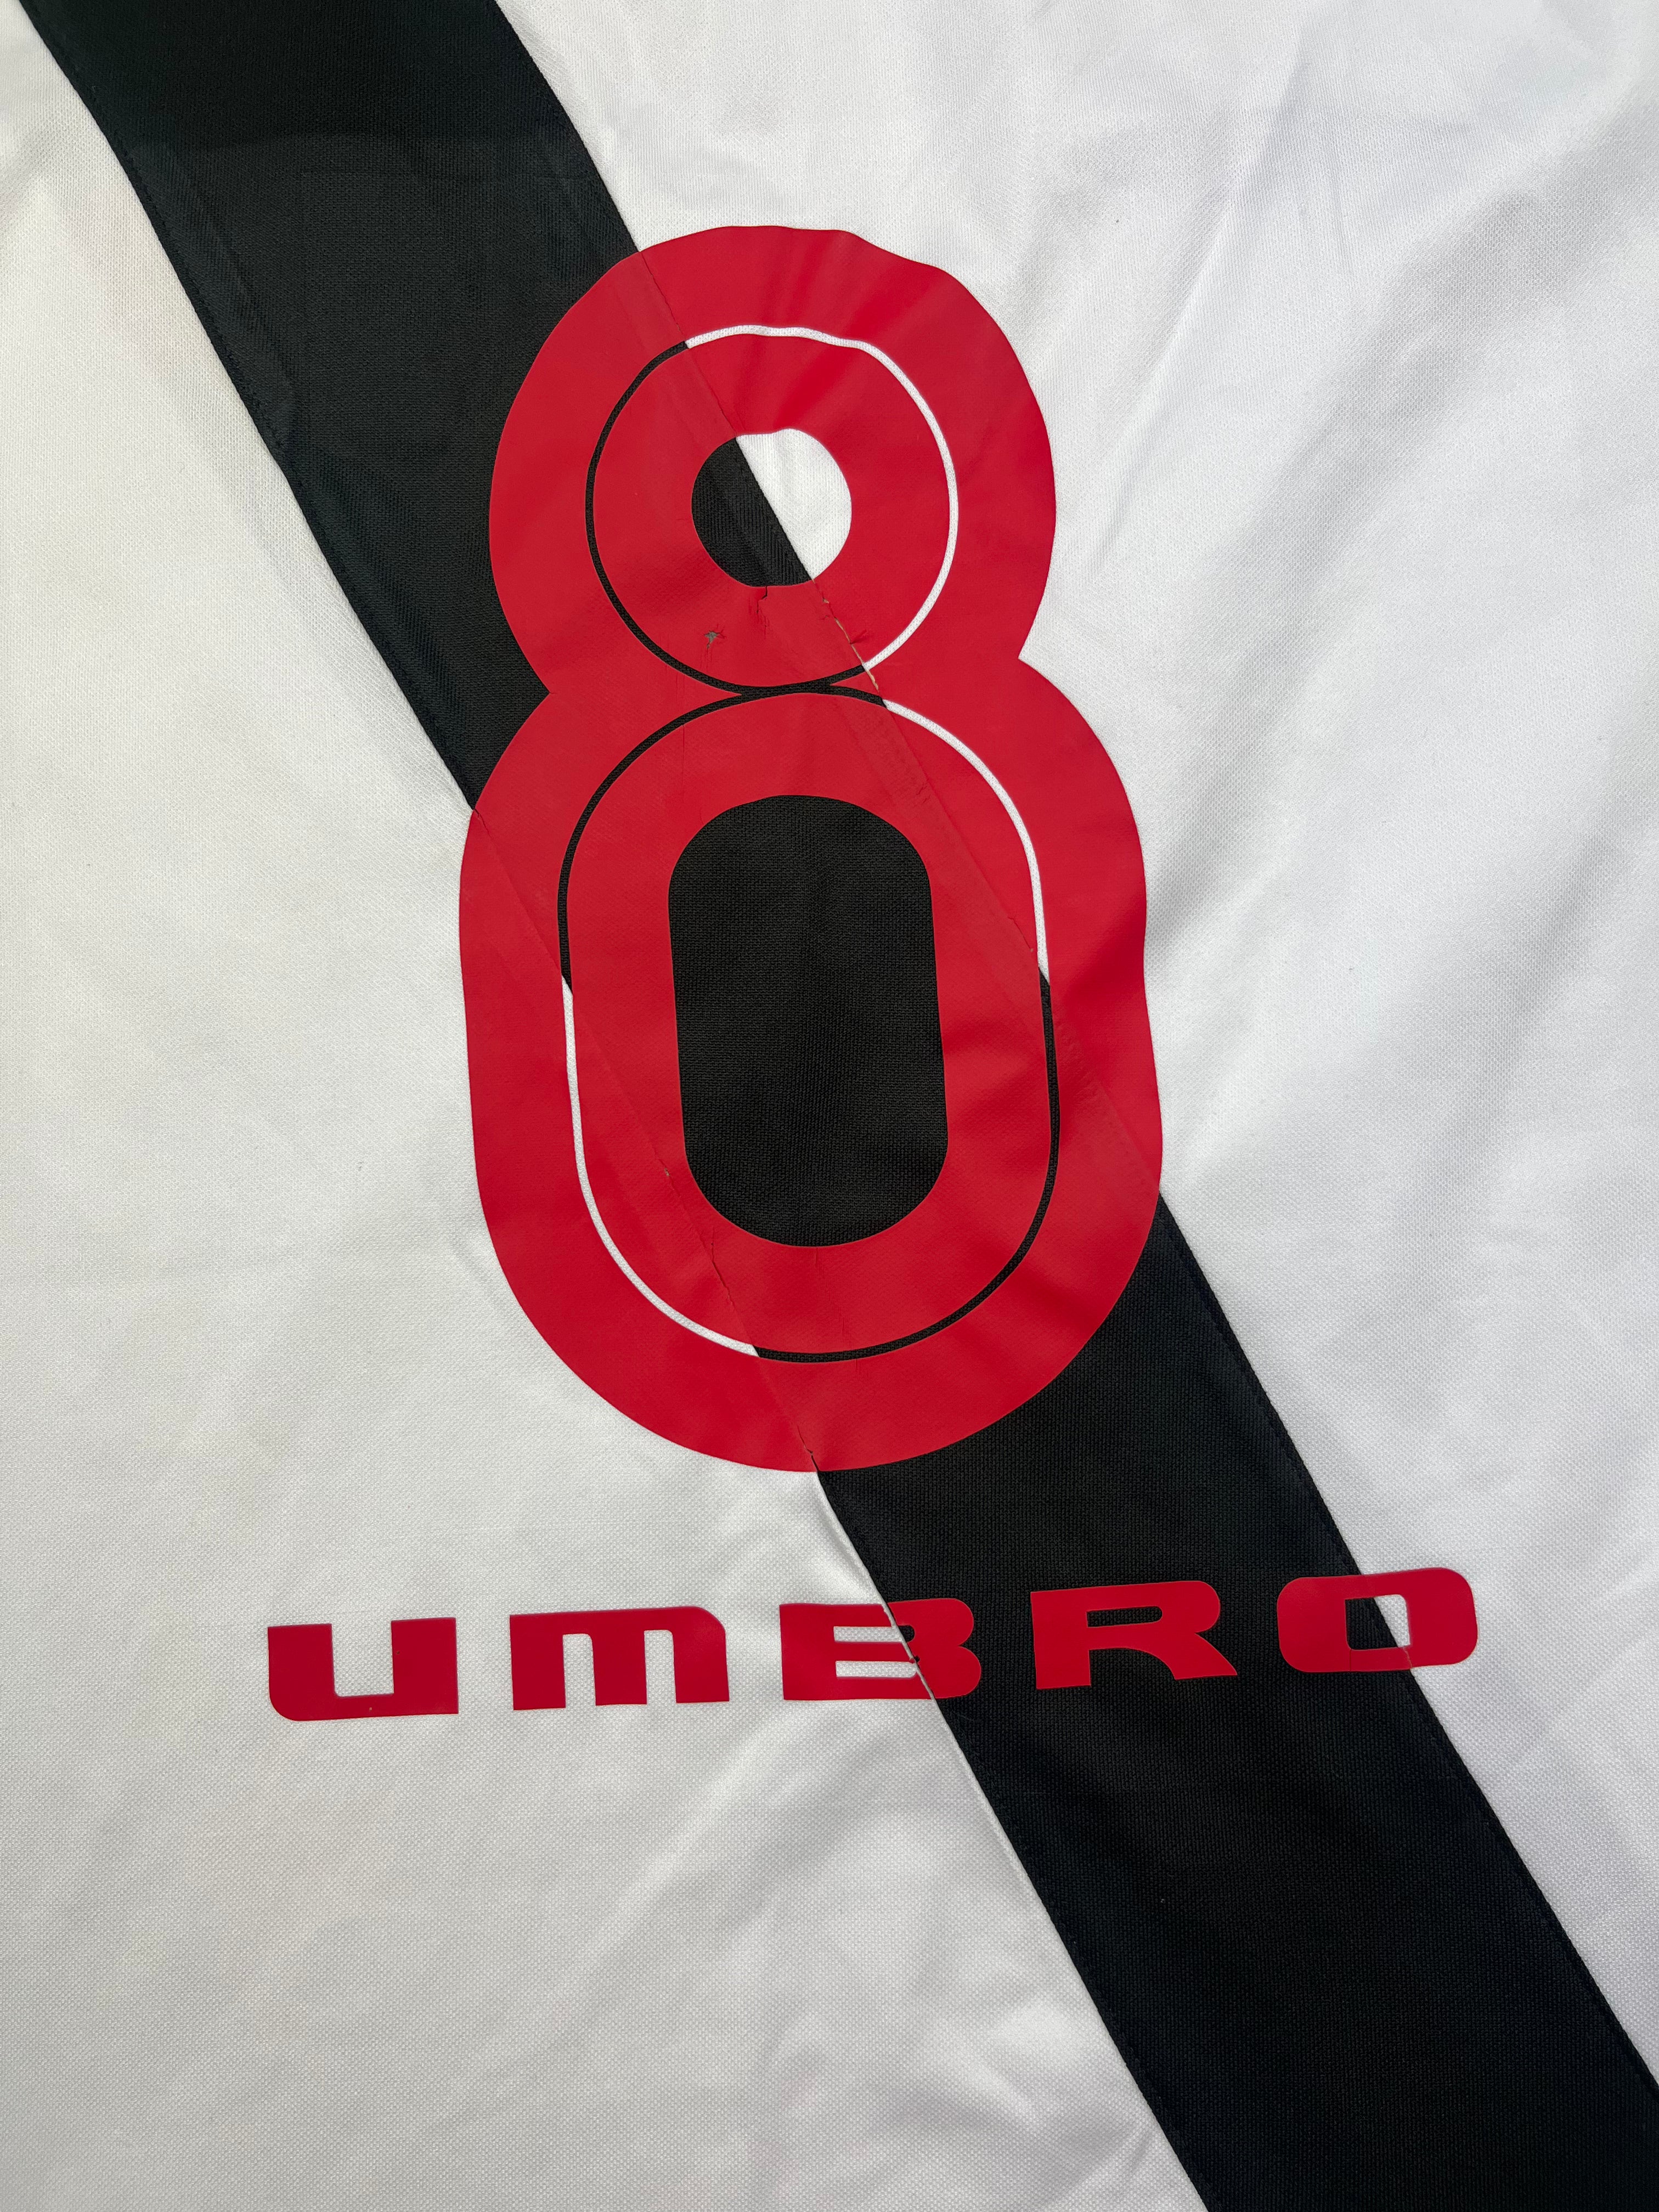 2003/04 Vasco da Gama Away Shirt #8 (S) 8/10